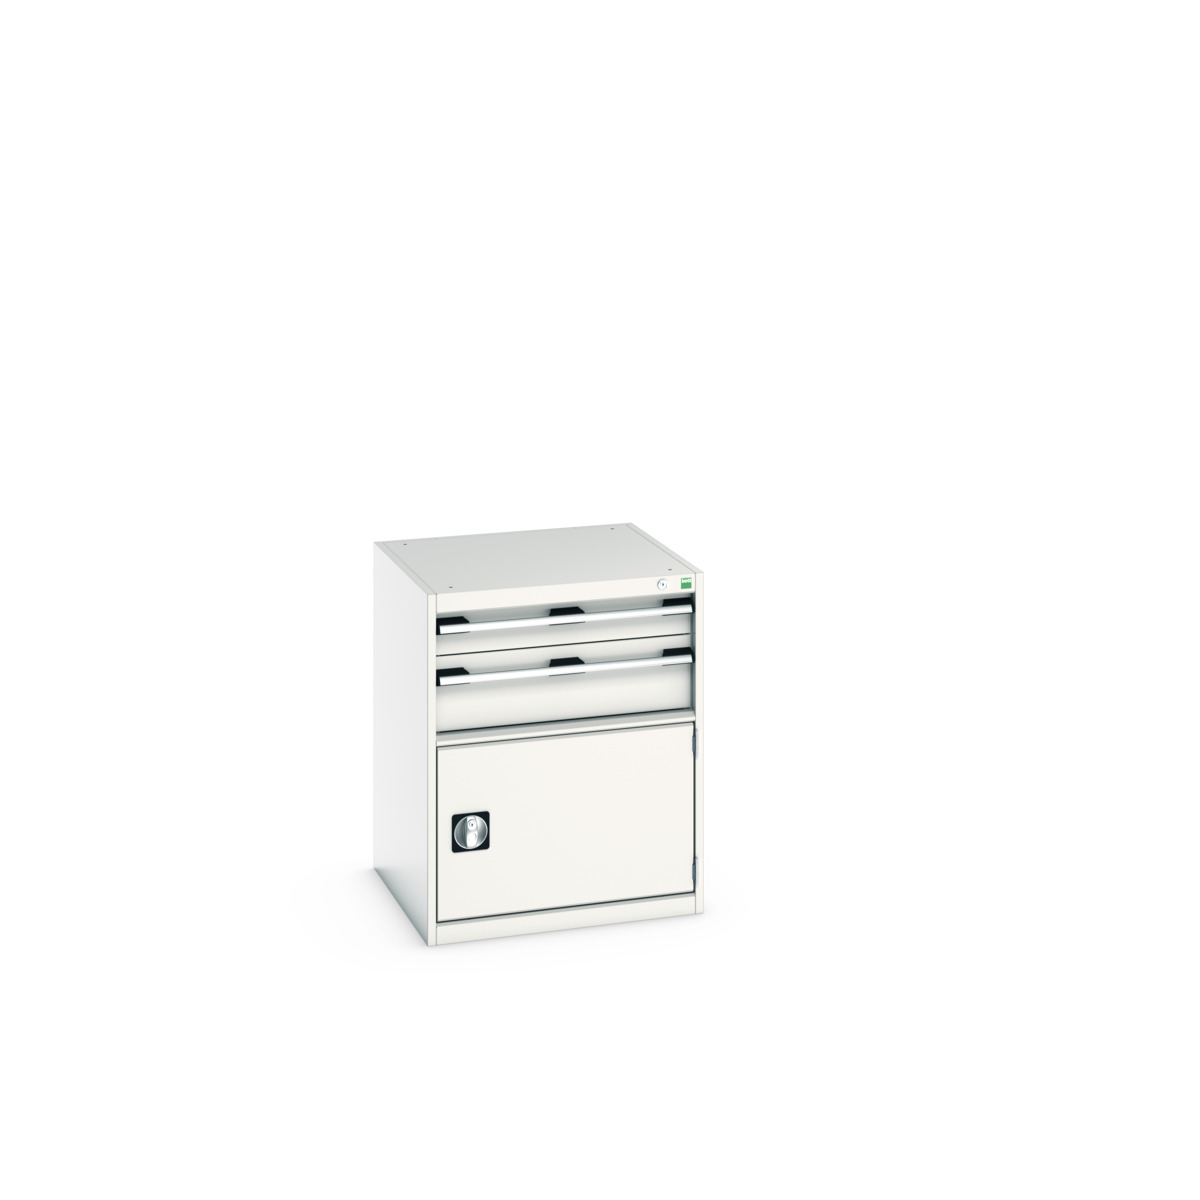 40019031.16V - cubio drawer-door cabinet